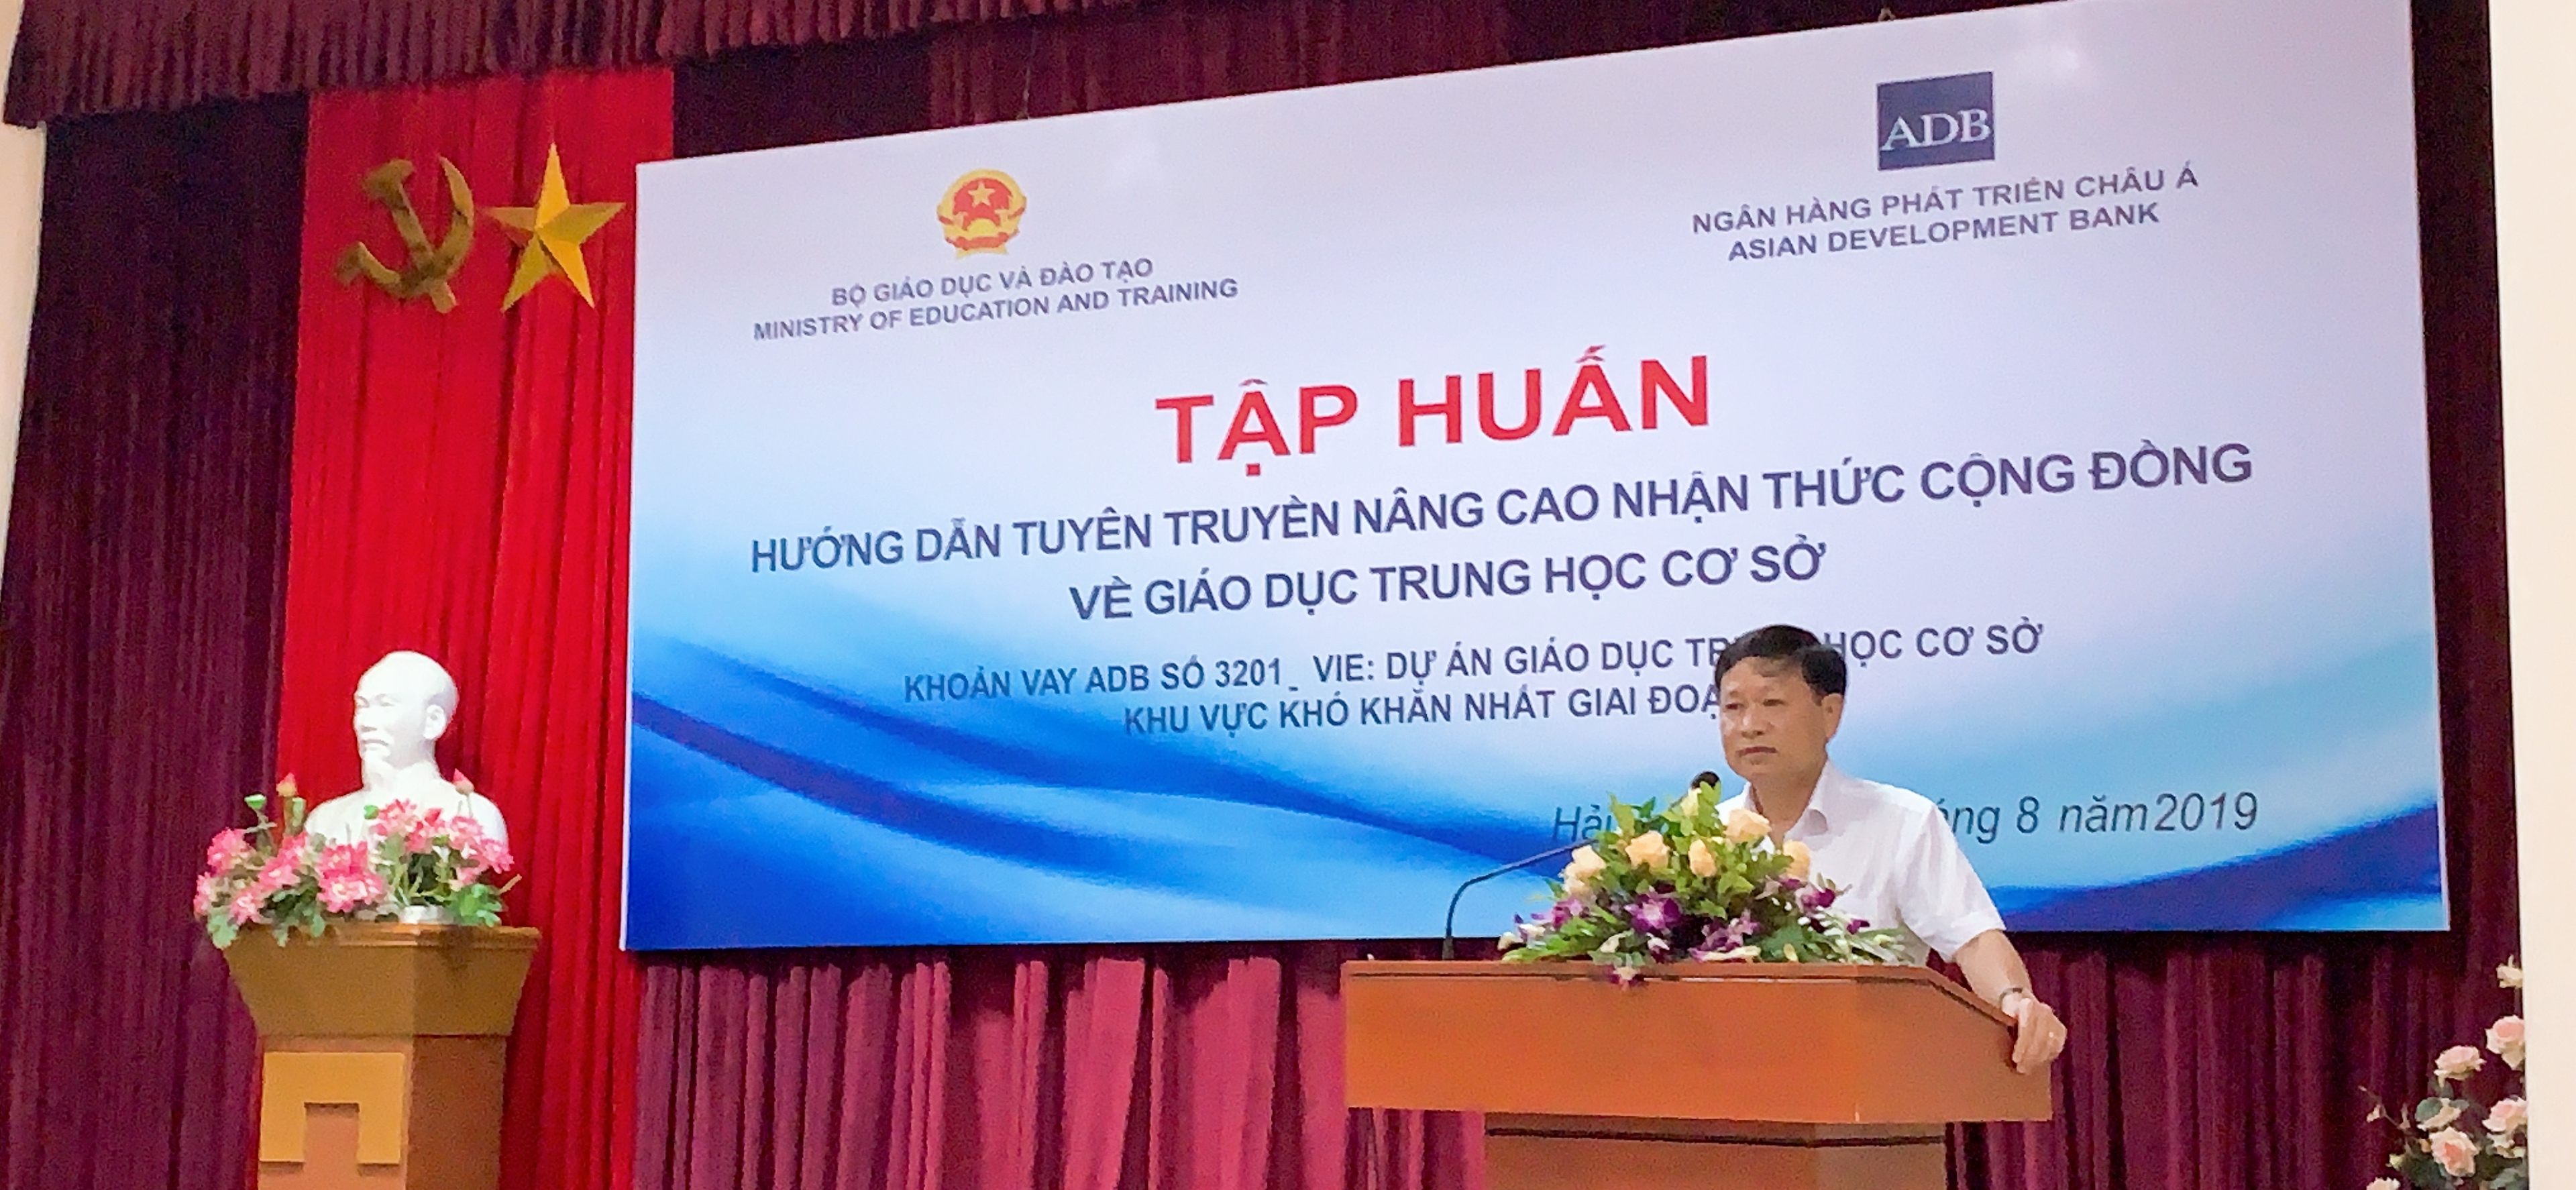 Tập huấn Hướng dẫn tuyên truyền nâng cao nhận thức cộng đồng về giáo dục THCS - 8/2019 - Đồ Sơn, Hải Phòng